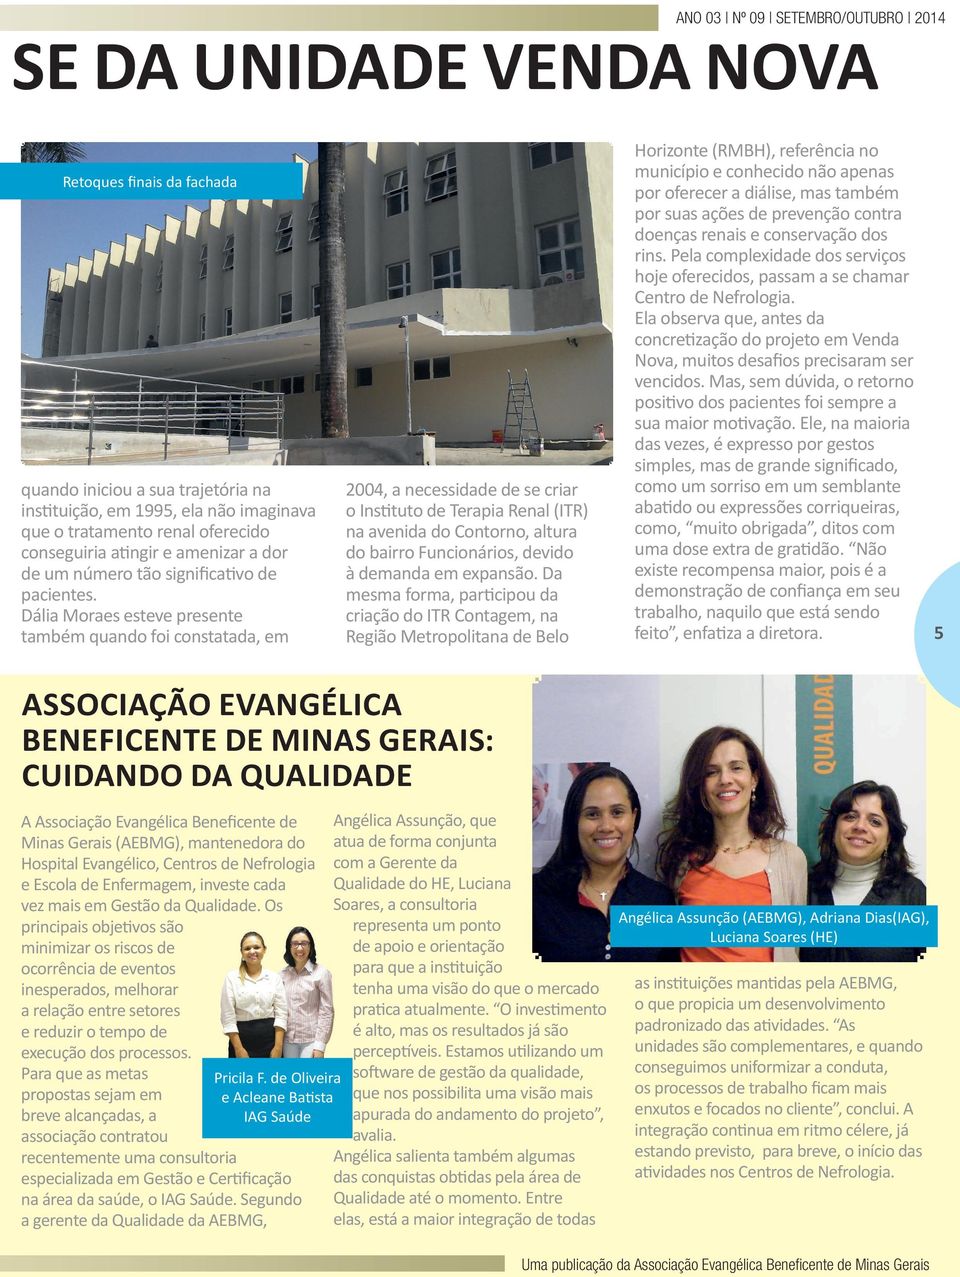 Dália Moraes esteve presente também quando foi constatada, em 2004, a necessidade de se criar o Instituto de Terapia Renal (ITR) na avenida do Contorno, altura do bairro Funcionários, devido à